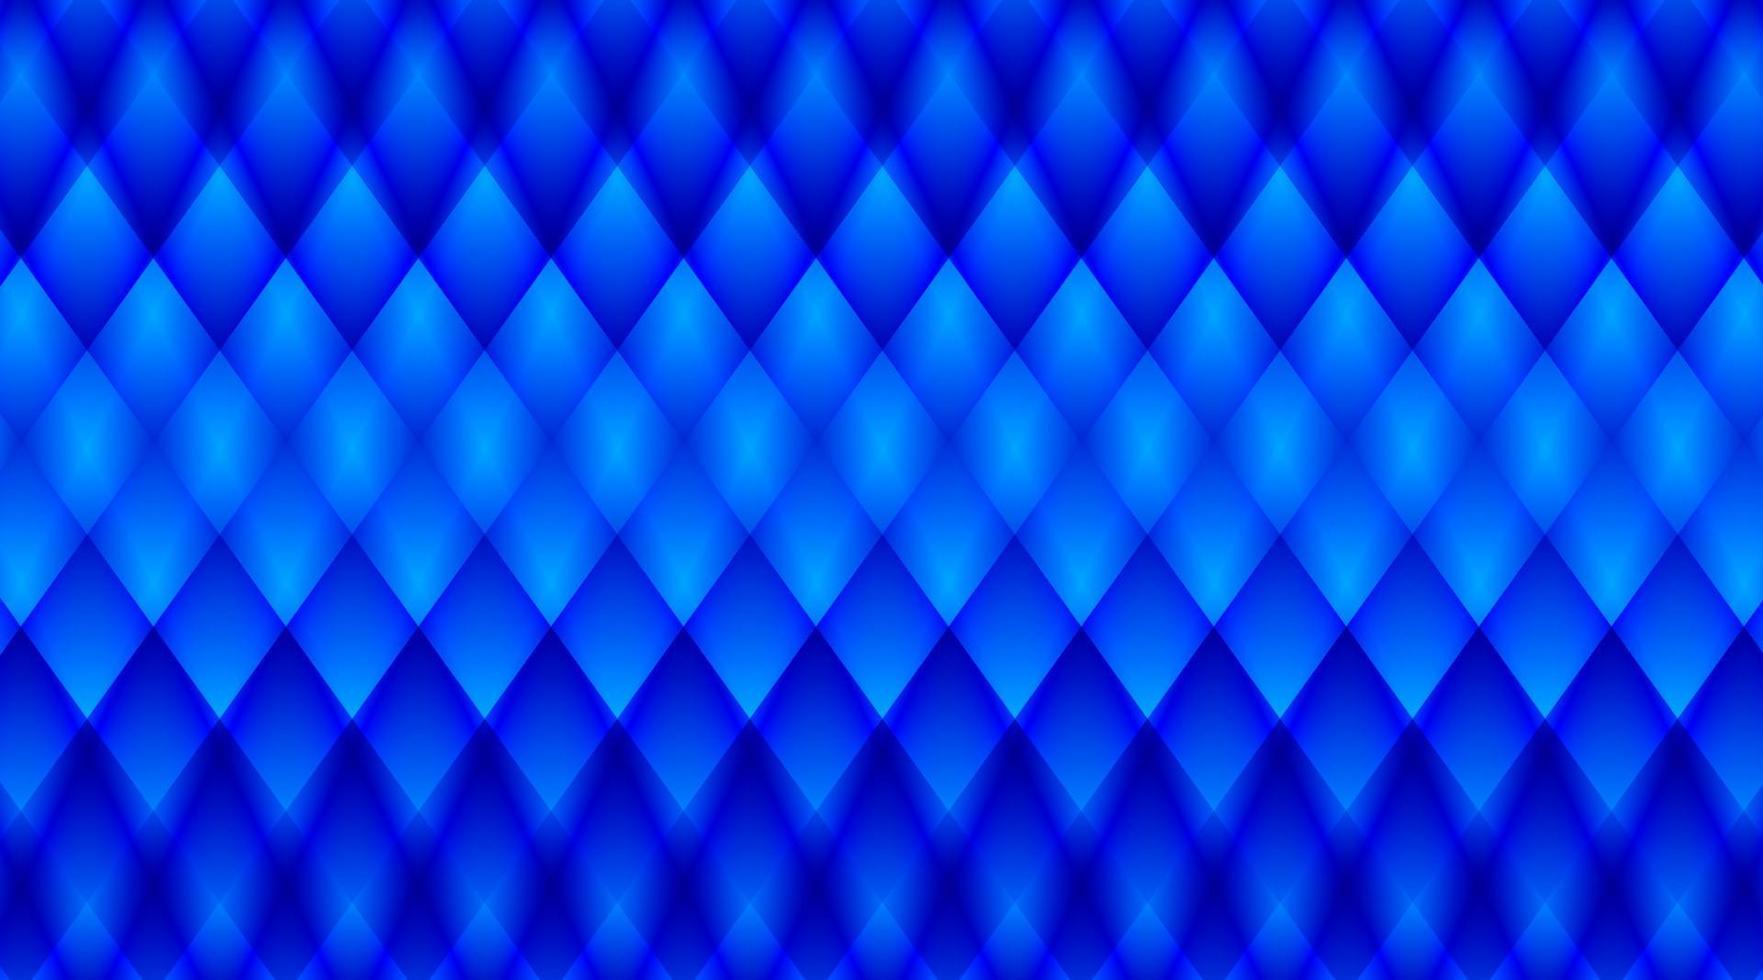 Musterhintergrund, blaue Gitterabstufung, Designvektor vektor